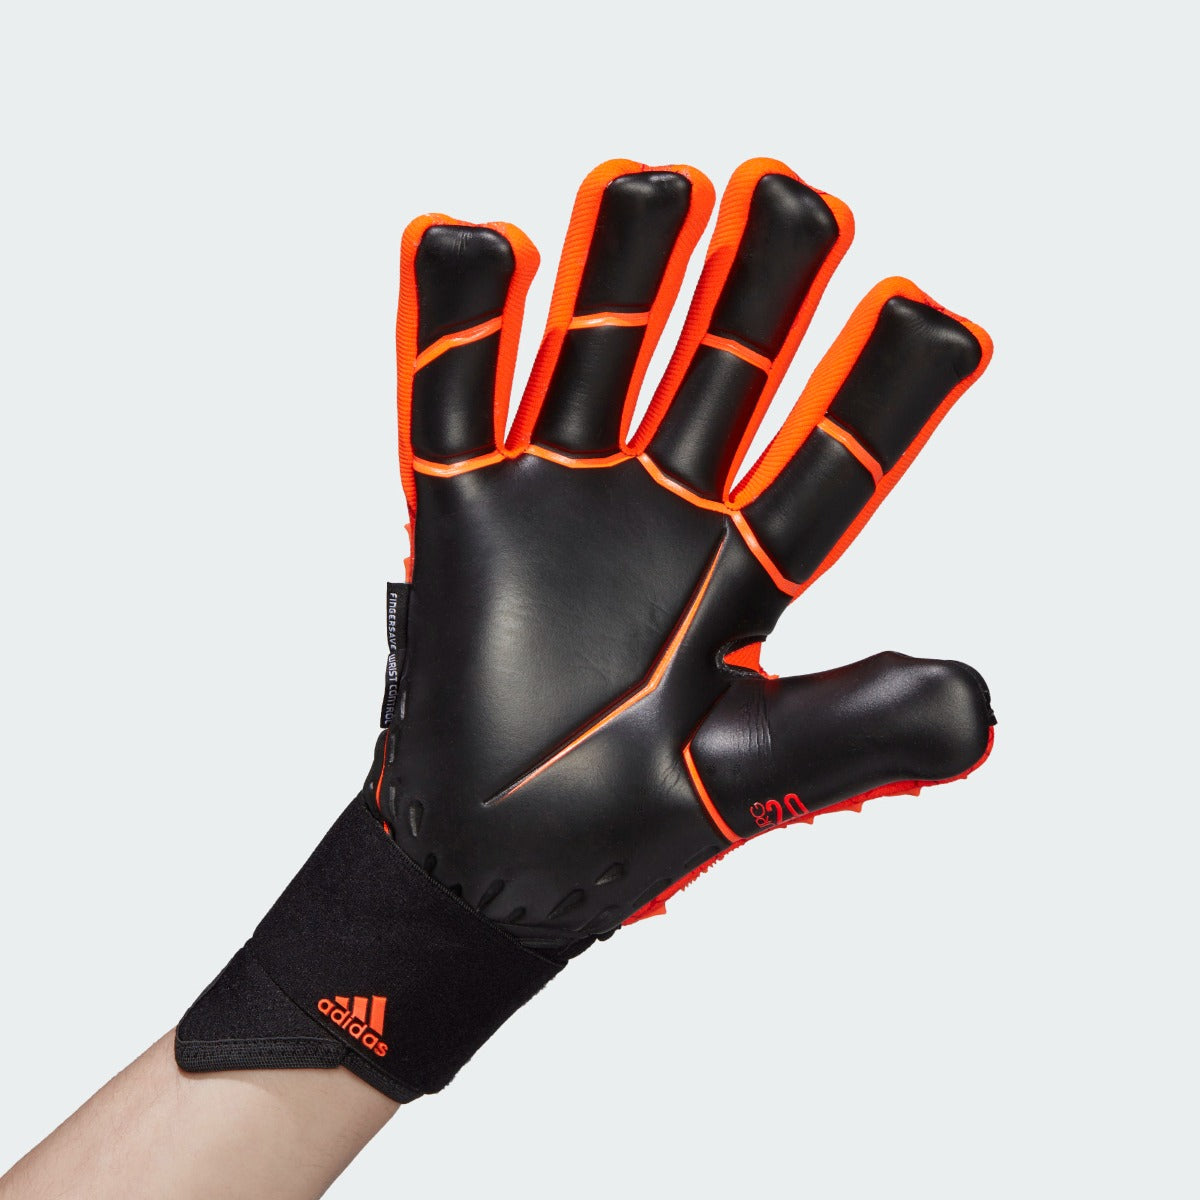 Adidas Predator Pro Ultimate Goalkeeper Gloves - Solar Red-Black (Single - Inner)